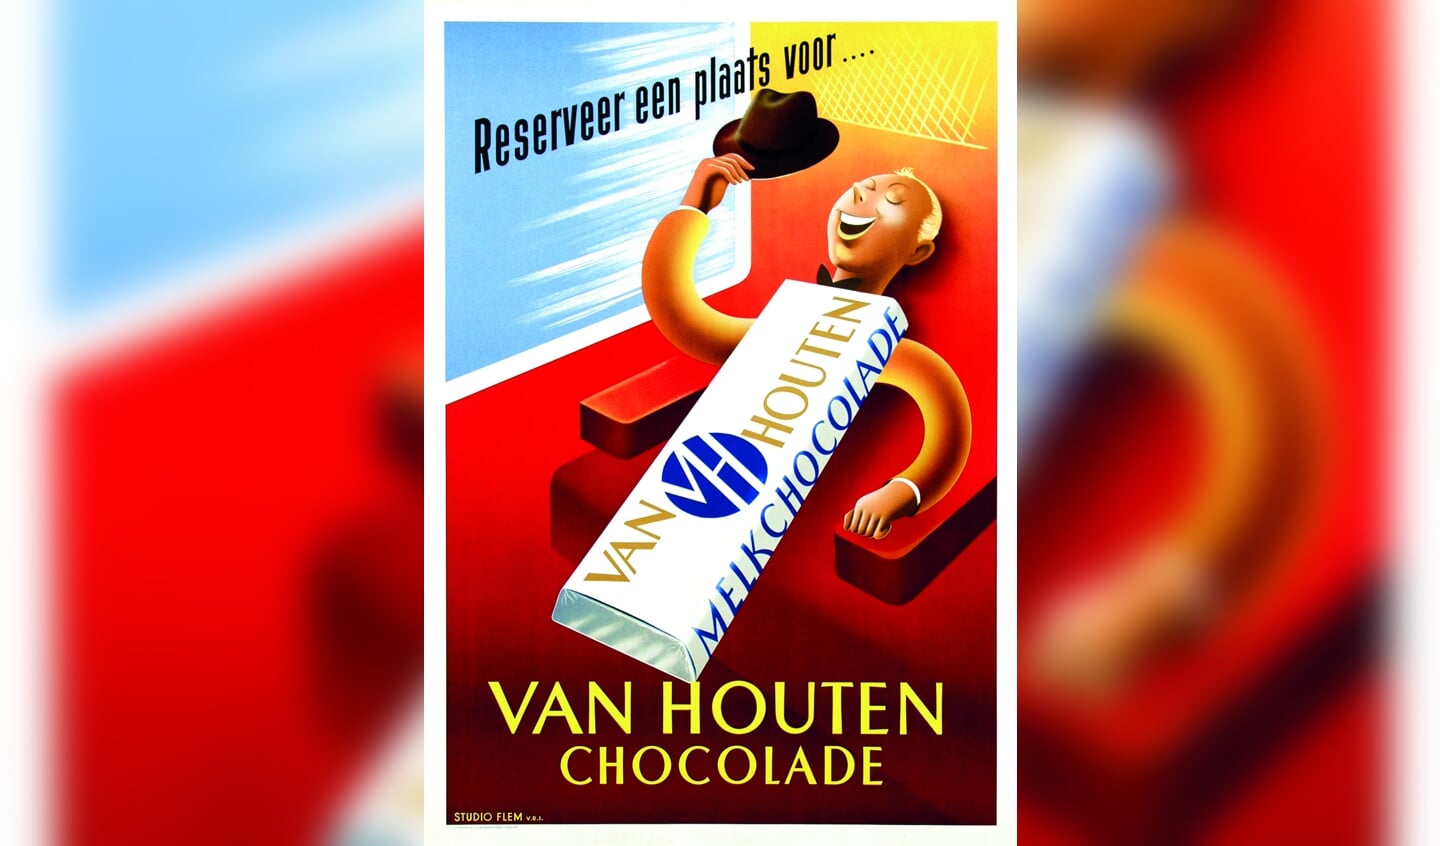 Van Houten verovert met enorme reclamecampagnes de wereldmarkt